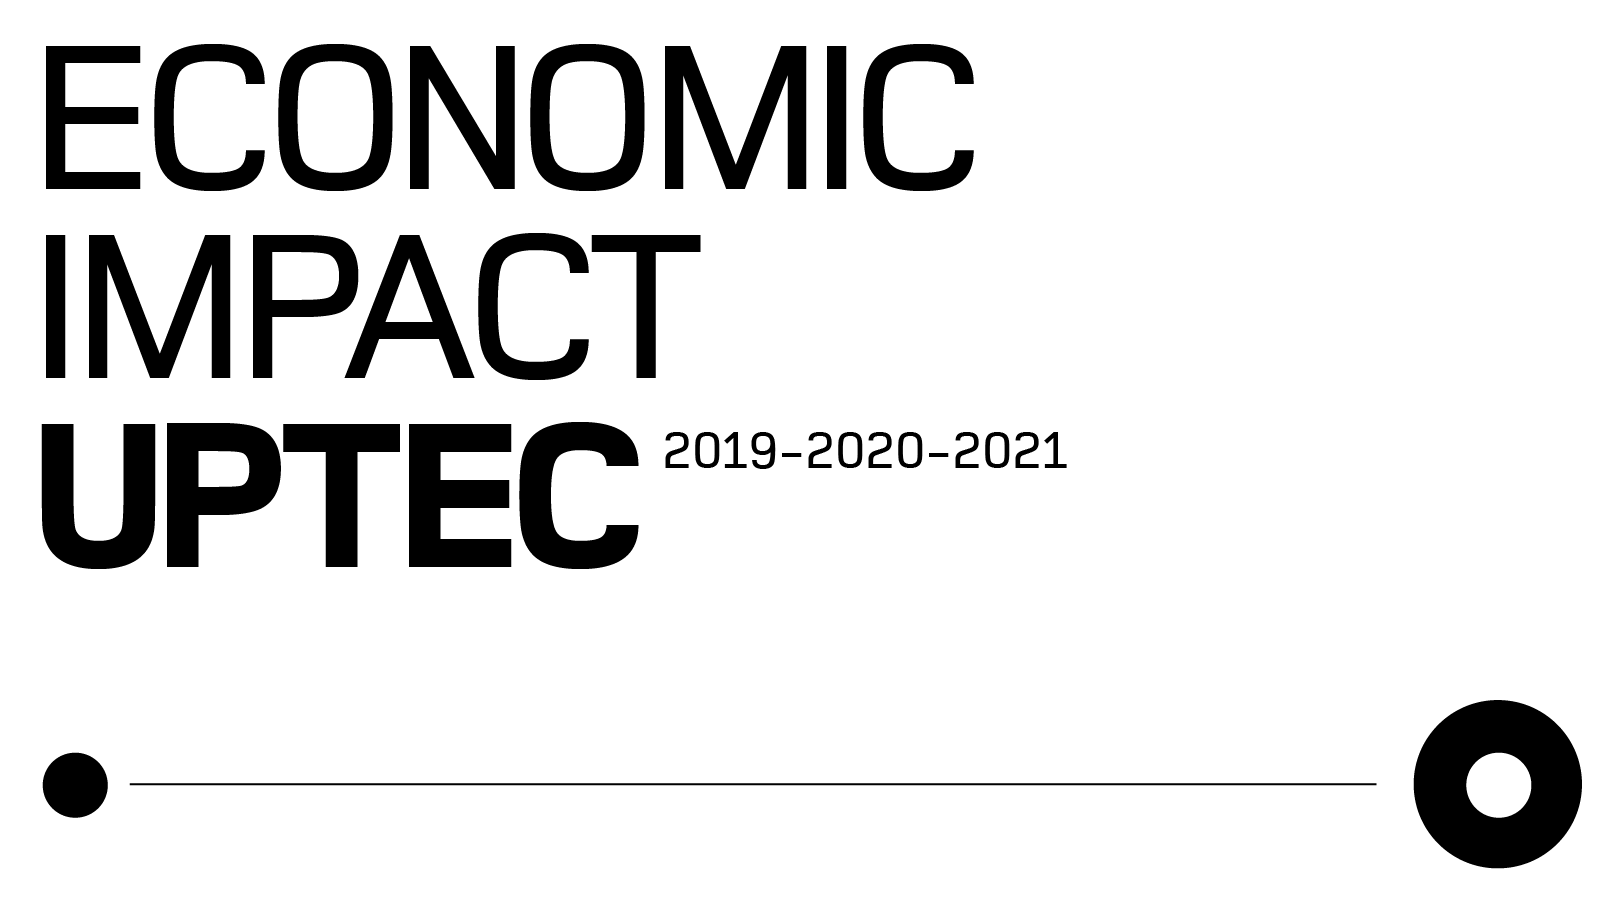 Economic impact cover